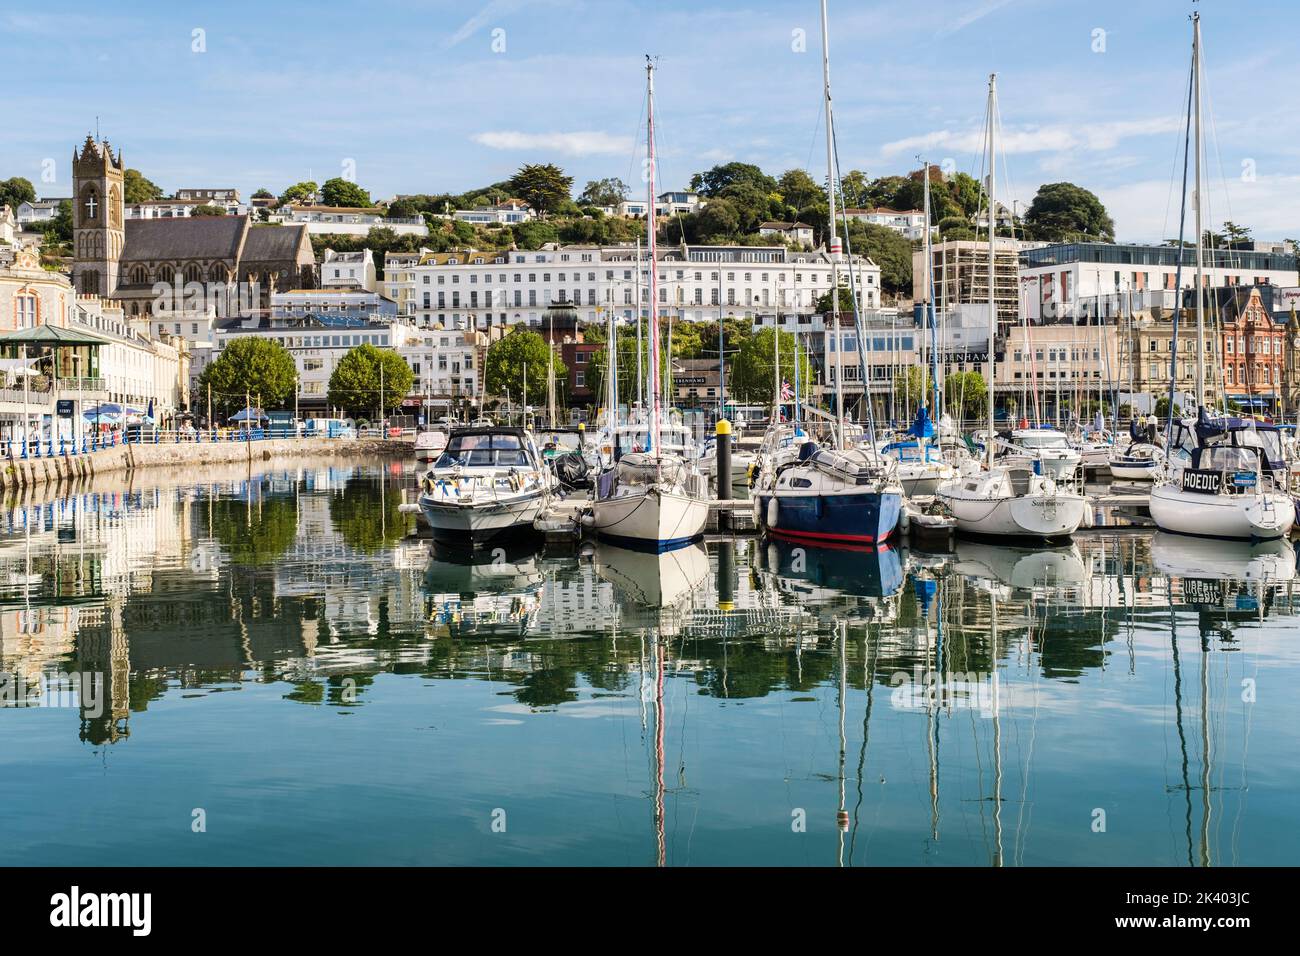 Les bateaux amarrés dans le quai intérieur du port se reflètent dans l'eau calme. Torquay, Devon, Angleterre, Royaume-Uni, Grande-Bretagne Banque D'Images